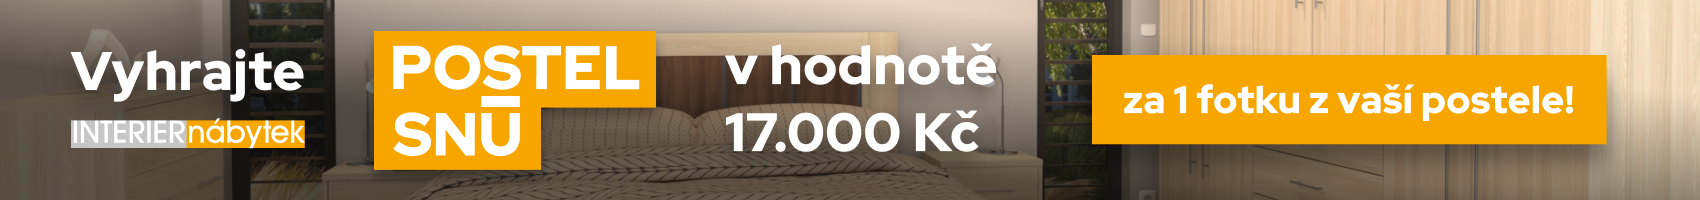 Vyhrajte postel snů v hodnotě 17.000 Kč za 1 fotku!